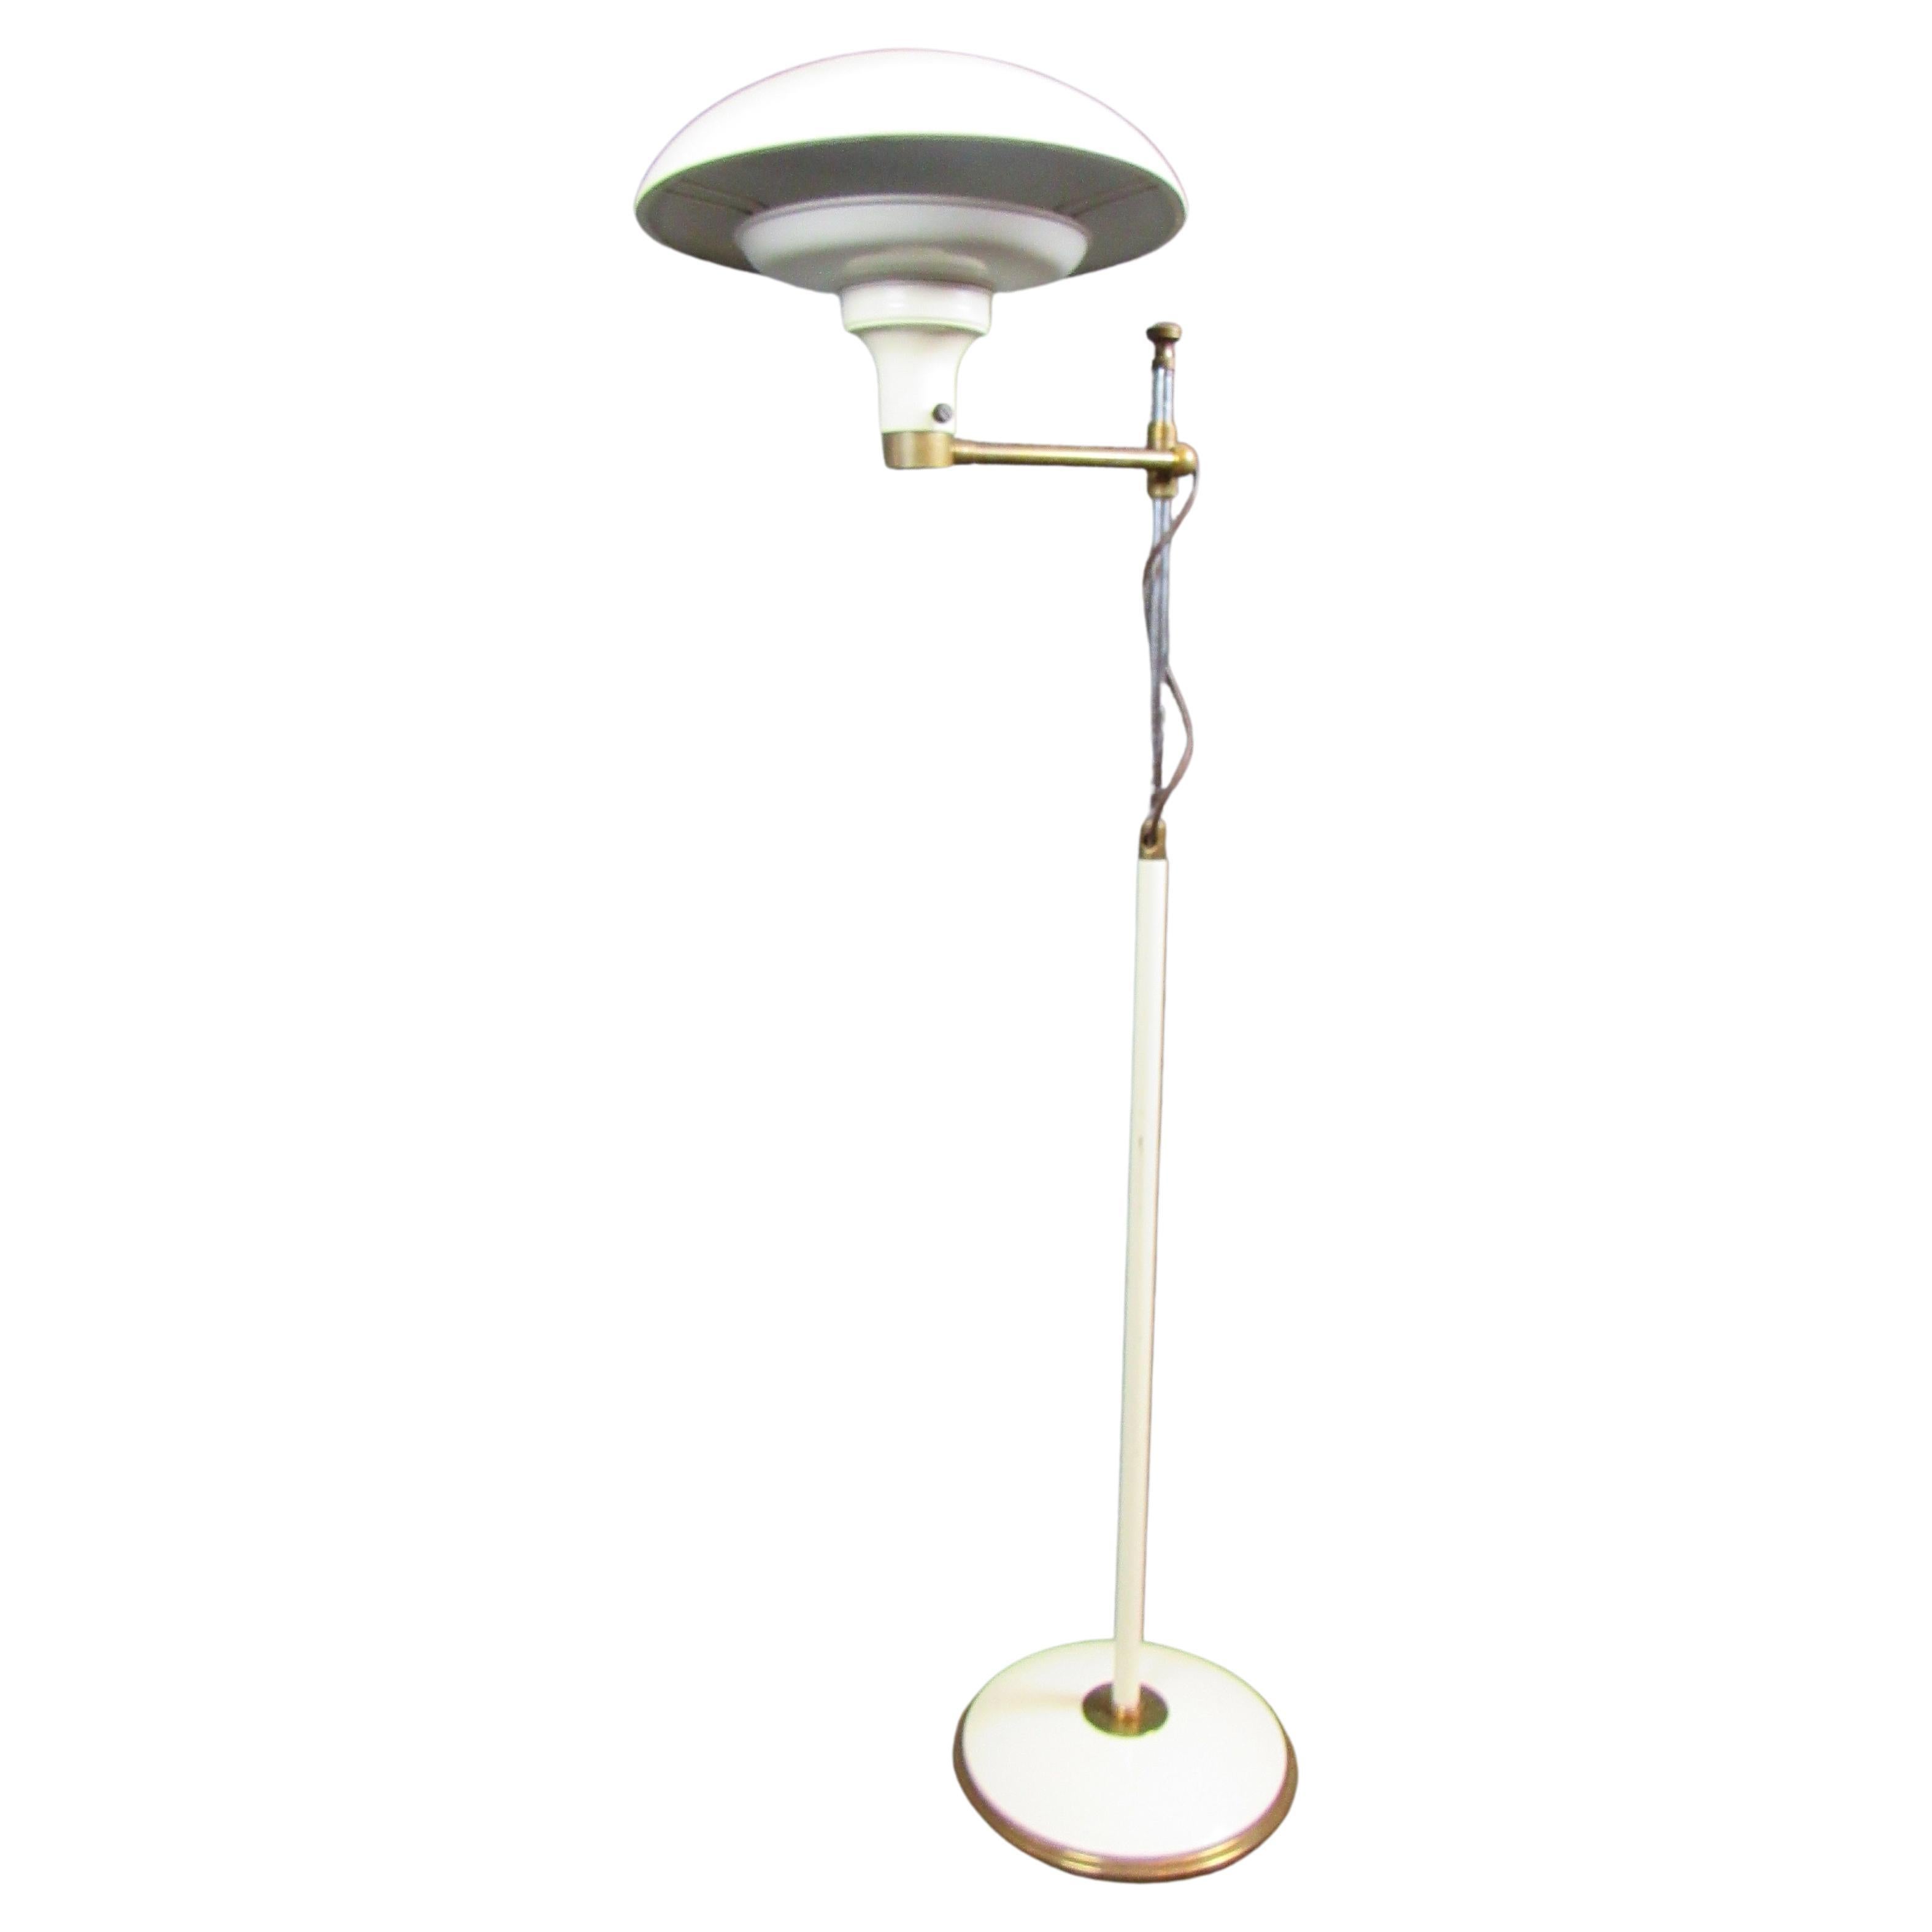 Vintage Italian Enameled Adjustable Floor Lamp